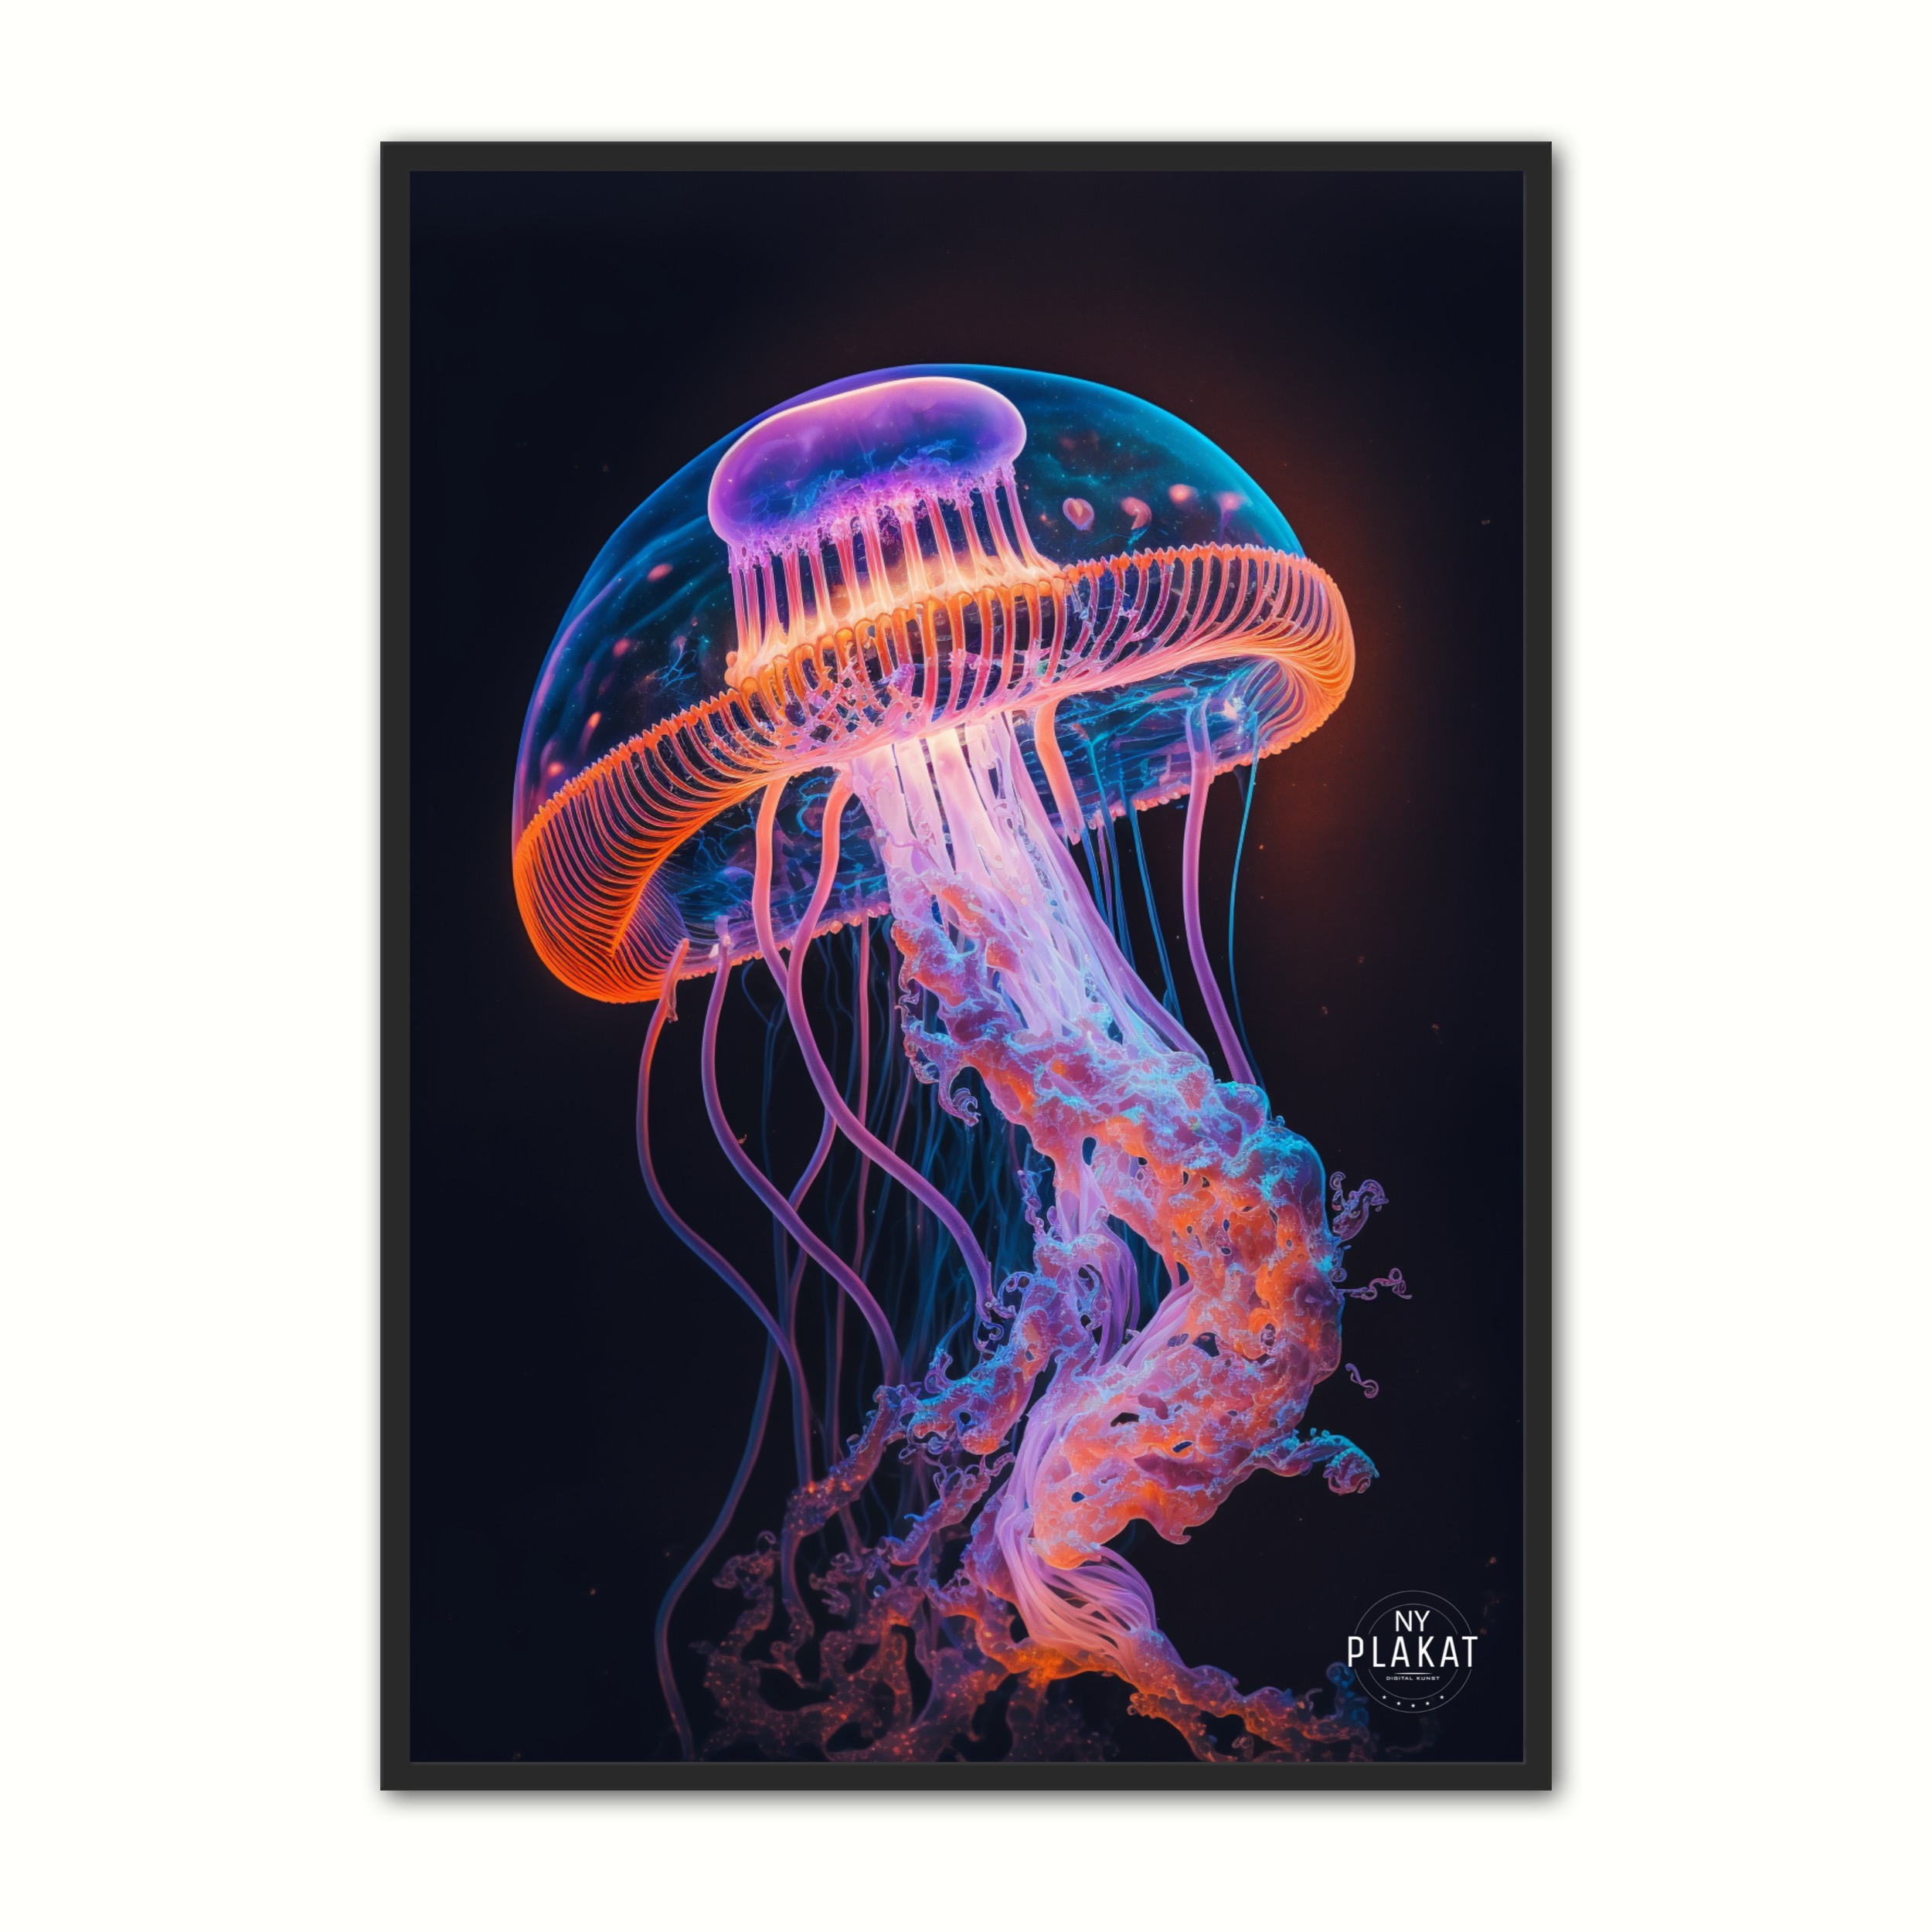 Se Jellyfish plakat No. 7 21 x 29,7 cm (A4) hos Nyplakat.dk